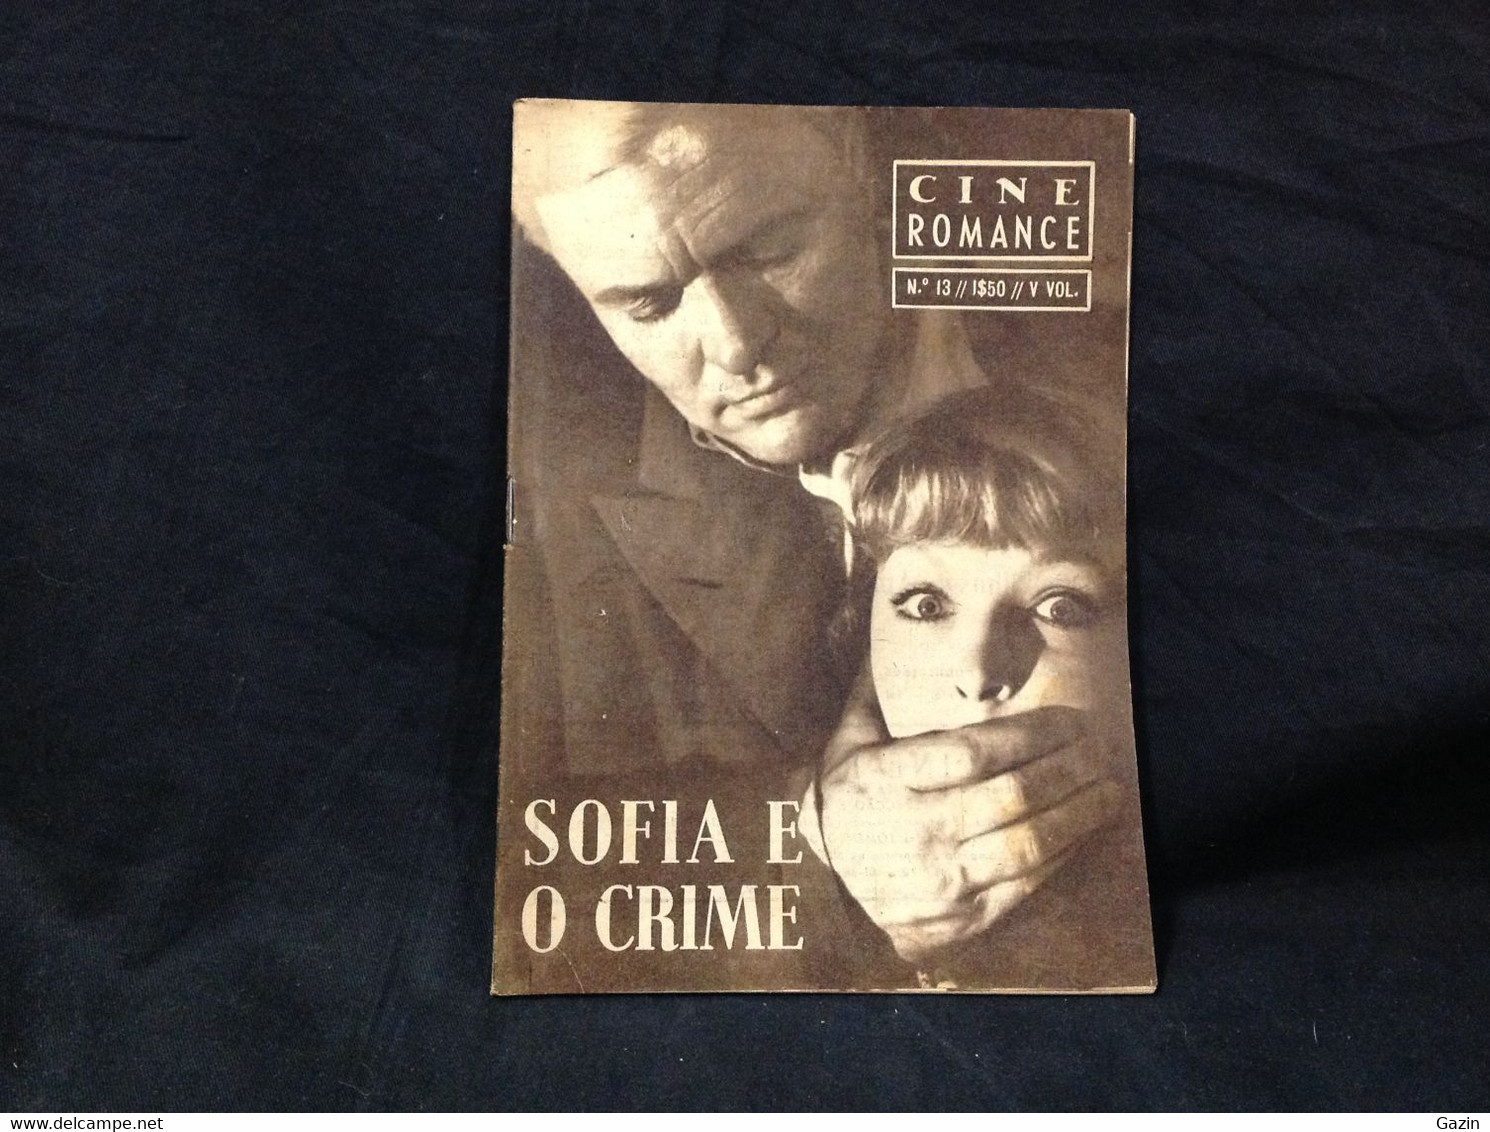 C2/23 - Sofia E O Crime - Marina Vlady * Peter Janeick -  Portugal Mag - Cine Romance -1956 - Eugénio Salvador - Kino & Fernsehen